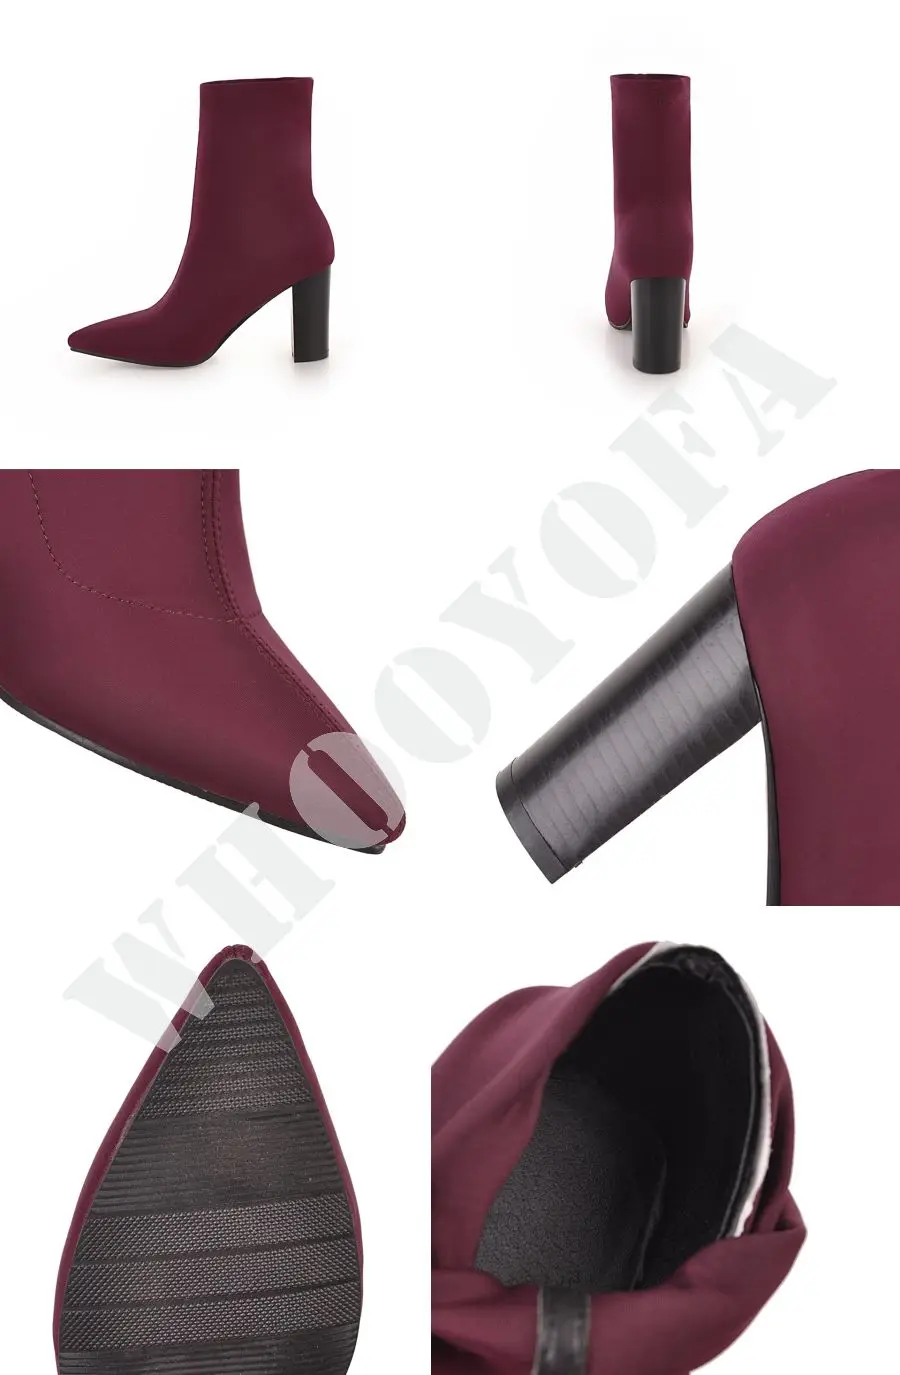 Брендовые новые качественные зимние элегантные женские ботинки до середины икры синего и черного цвета обувь для деловой женщины квадратный каблук, большие размеры 10, 43, WA32